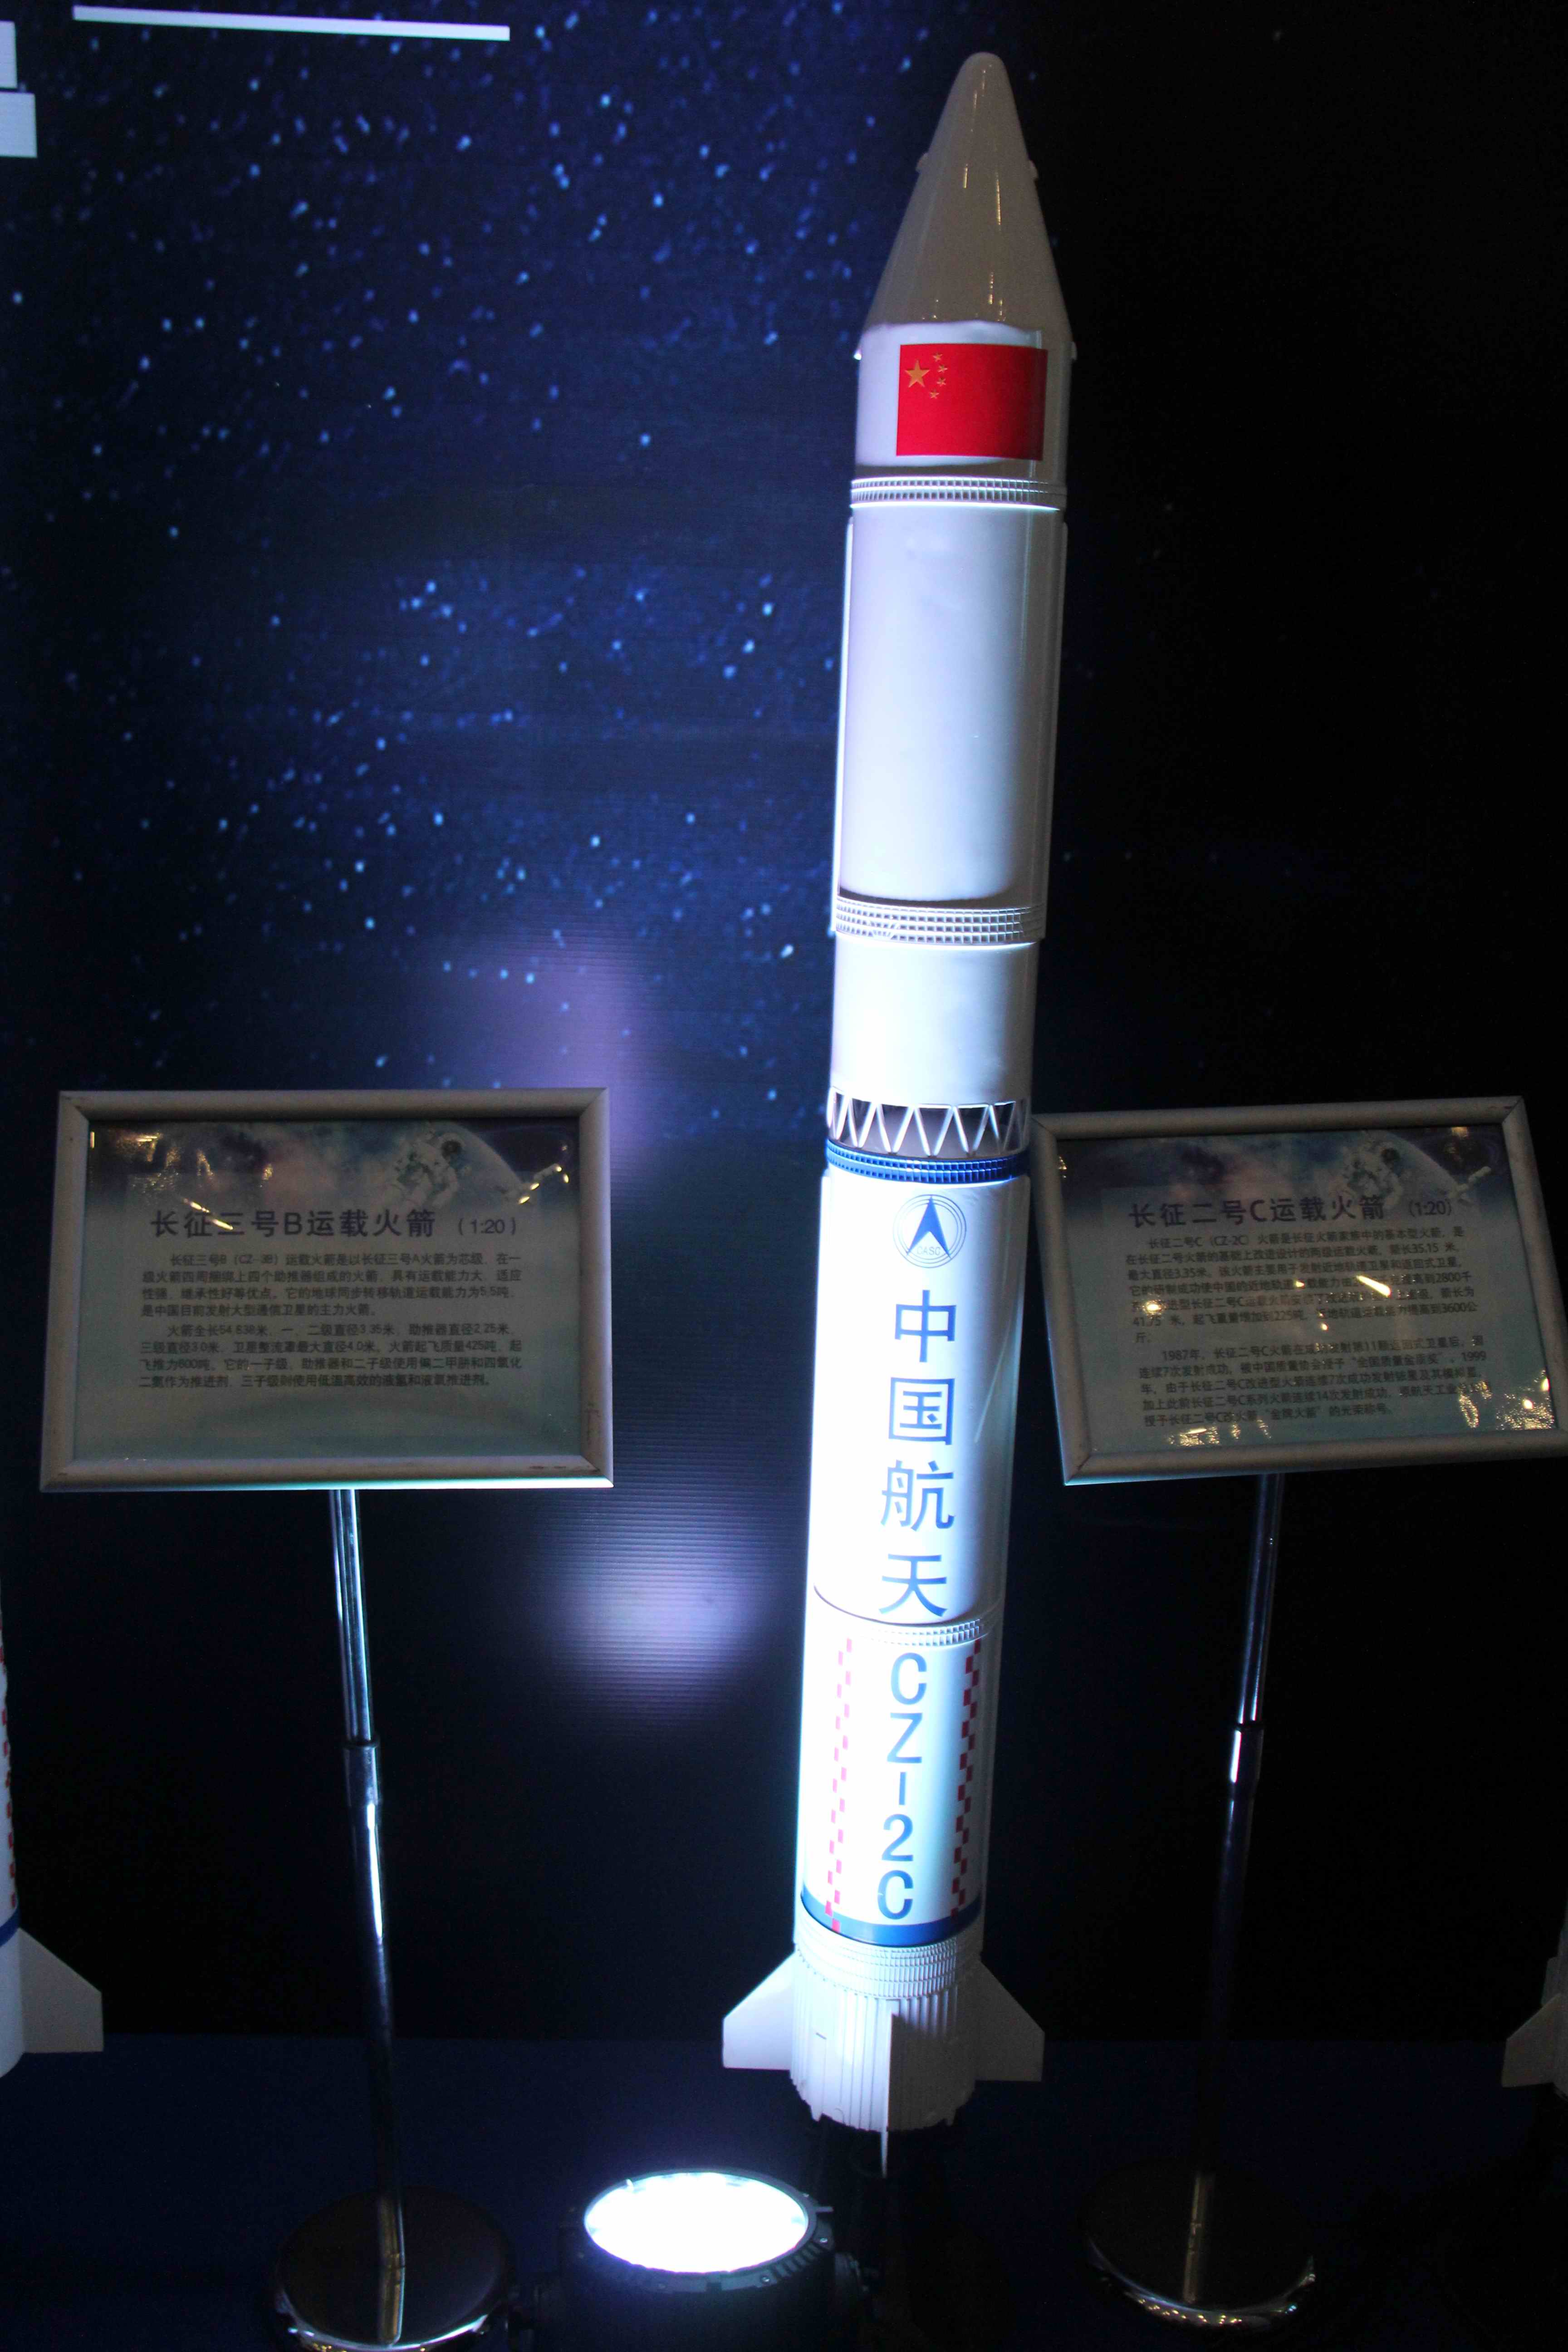 这么多中国长征航天火箭虽然是模型也很骄傲自豪